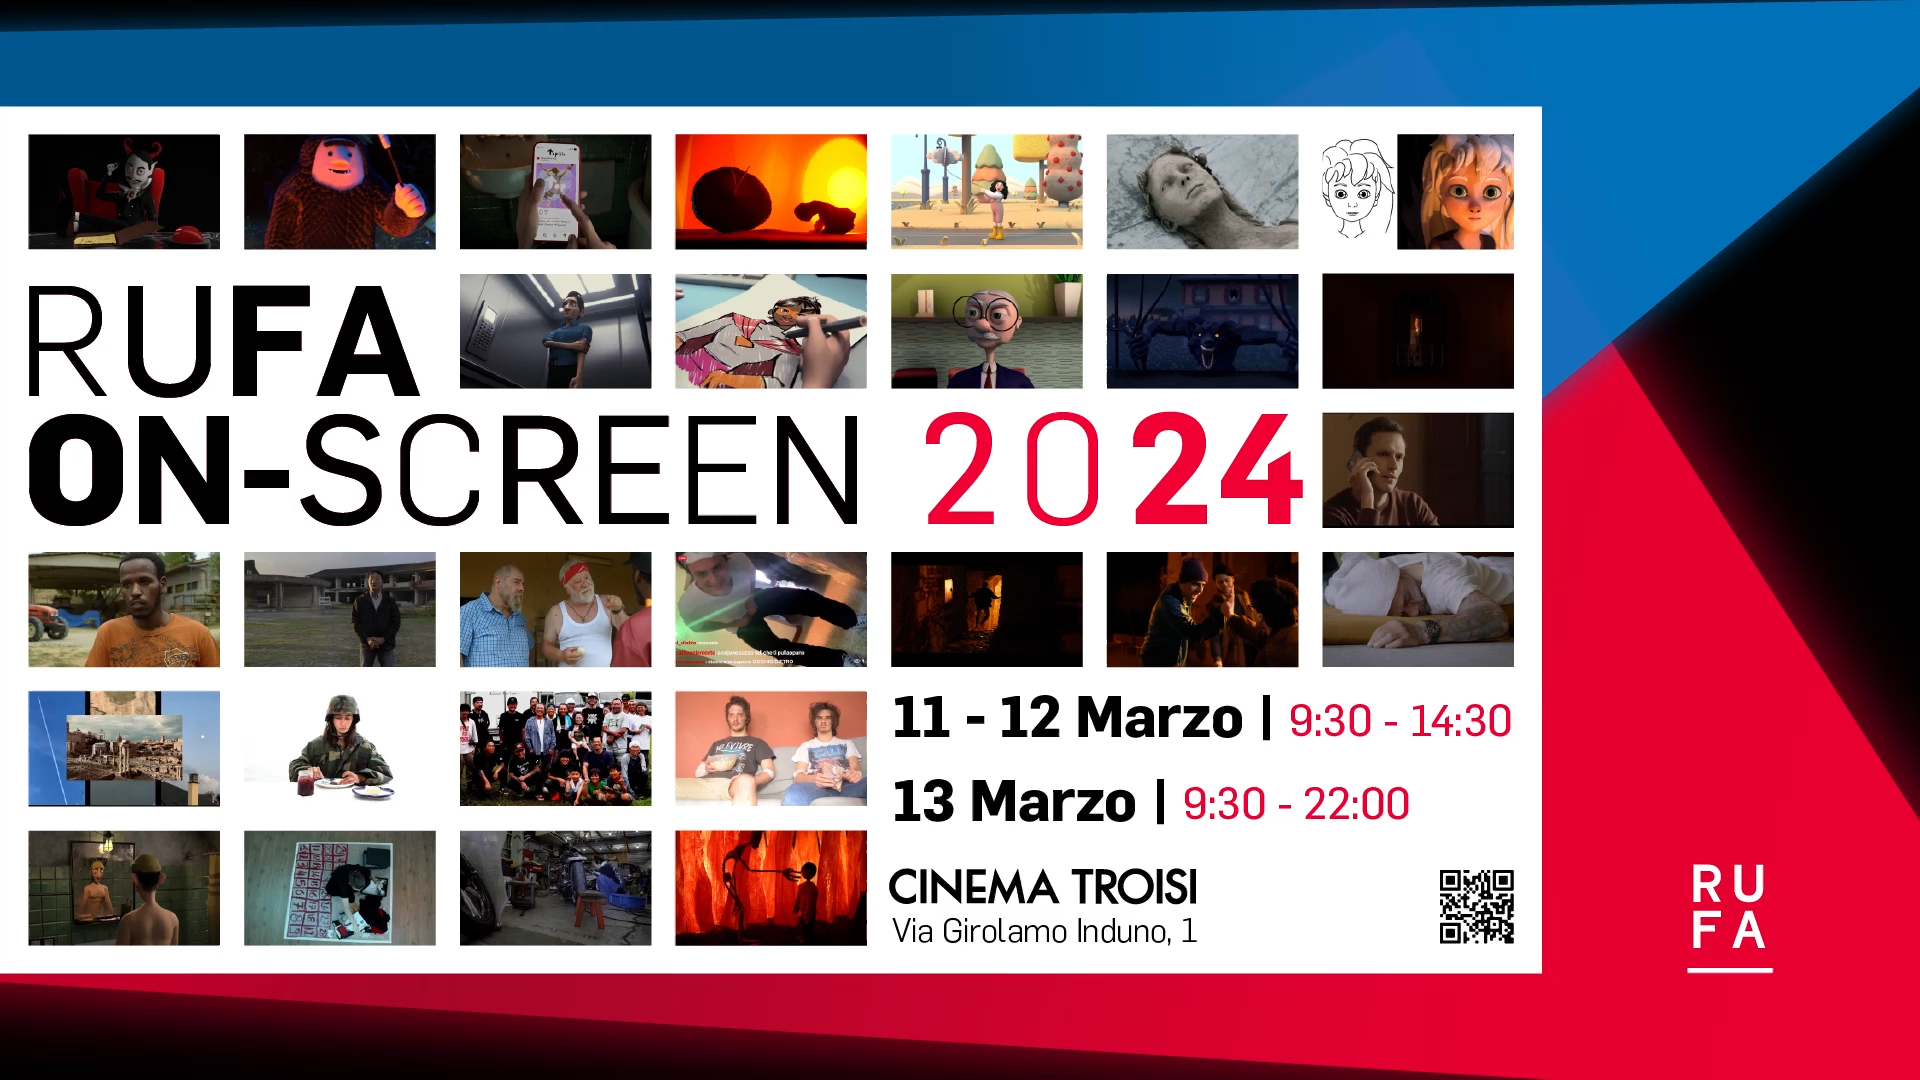 “RUFA on screen 2024” arriva al Cinema Troisi, la rassegna cinematografica dei cineasti e registi del domani dell’accademia di Belle Arti RUFA